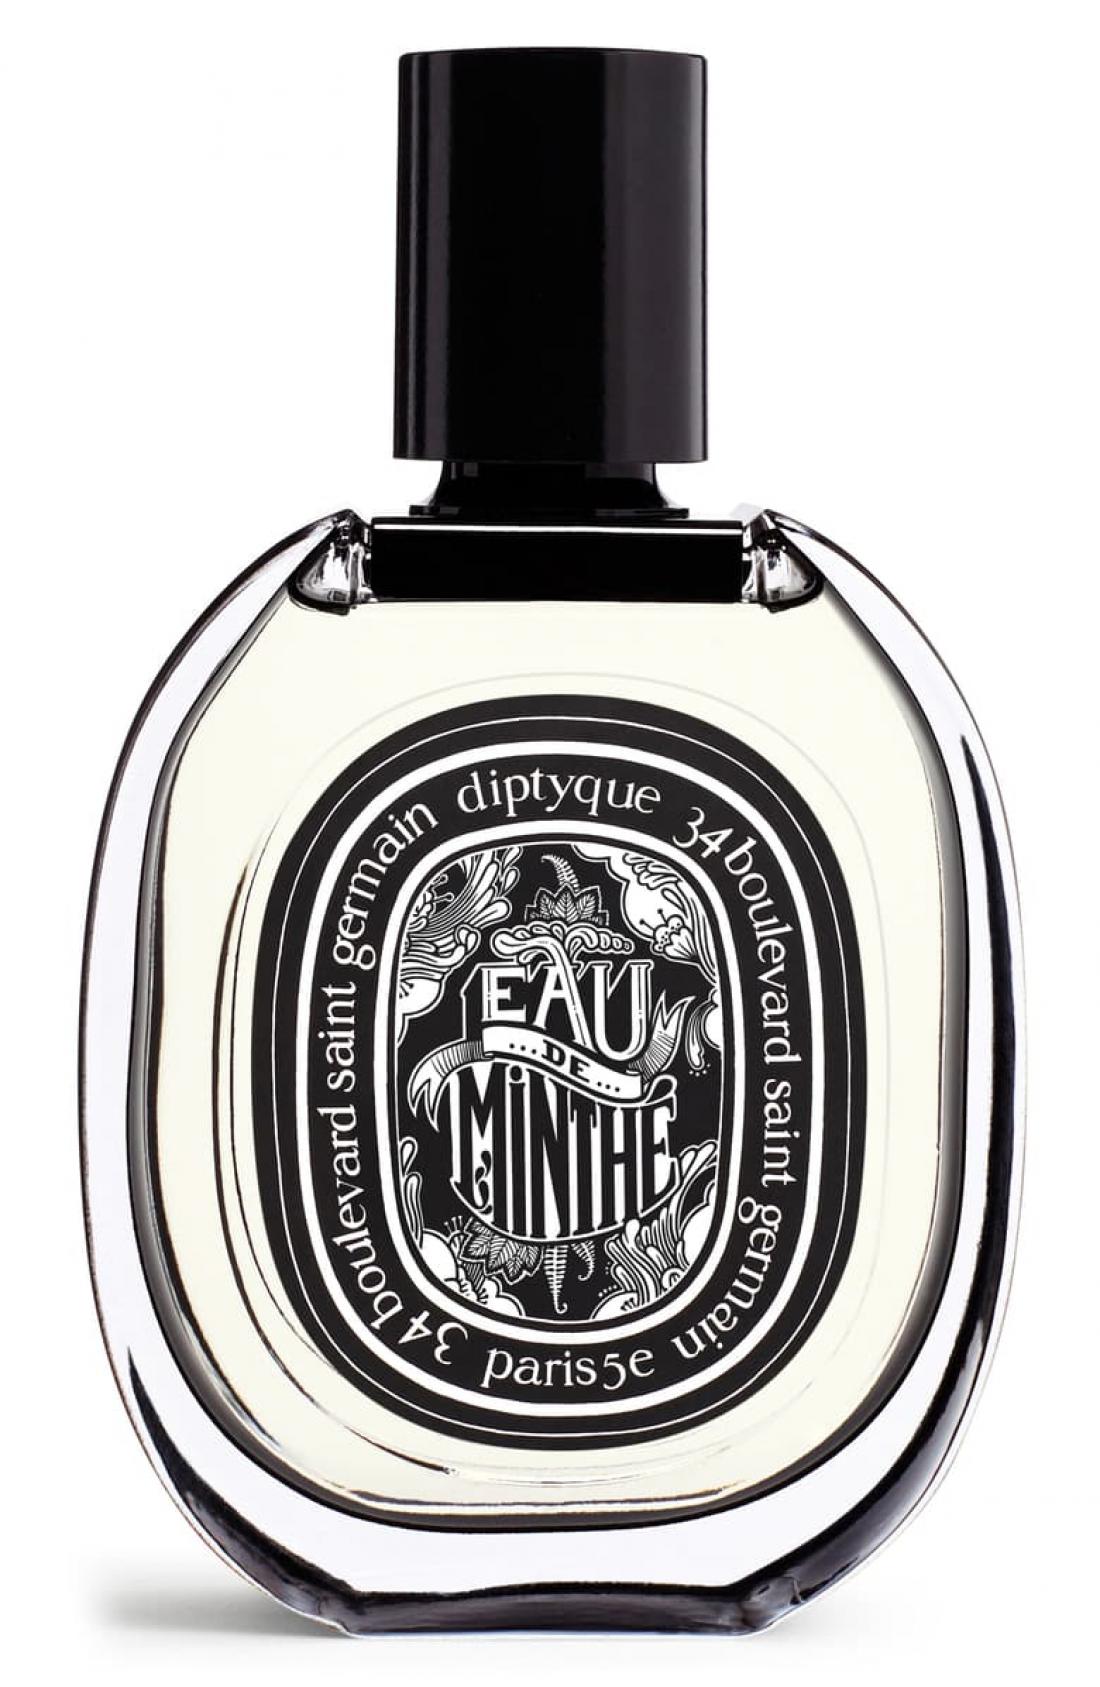 Poznavalcem parfumskega sveta je znana znamka Diptyque, njihov Eau de Minthé Eau de Parfum, vsebuje mint, kar je redkost za dišave. Svež, nekoliko možat vonj je primeren za vse letne čase.